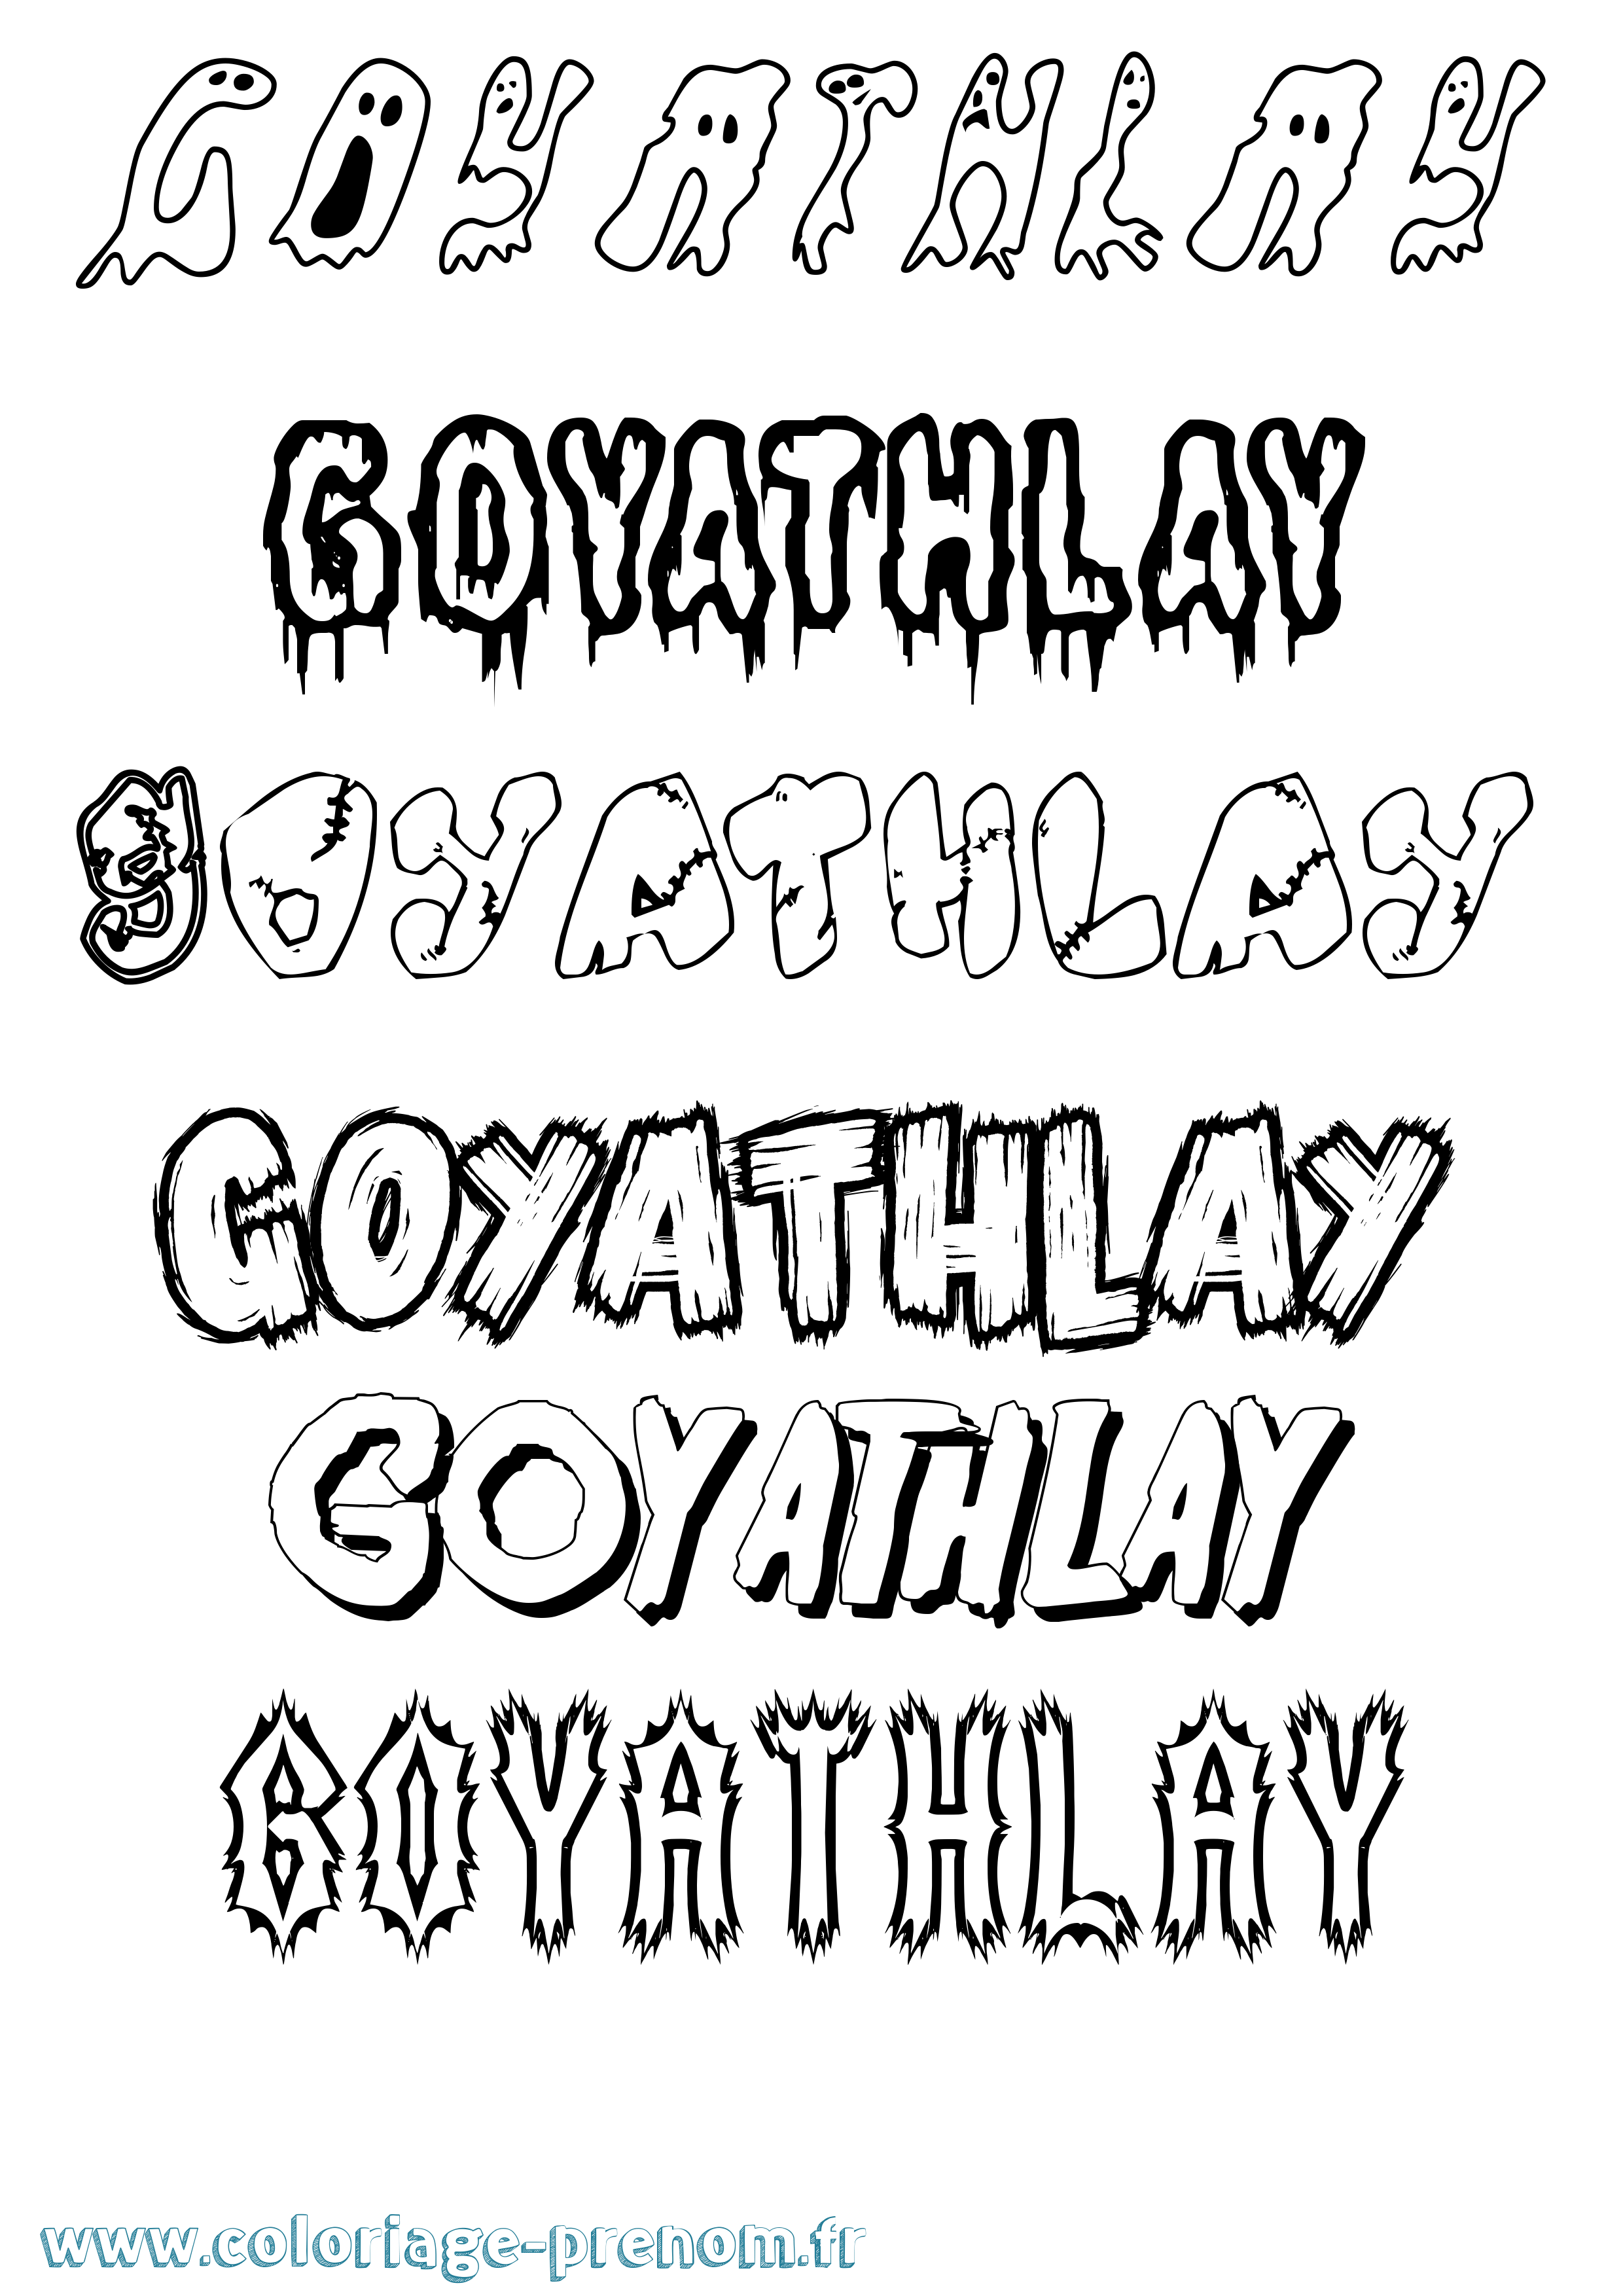 Coloriage prénom Goyathlay Frisson